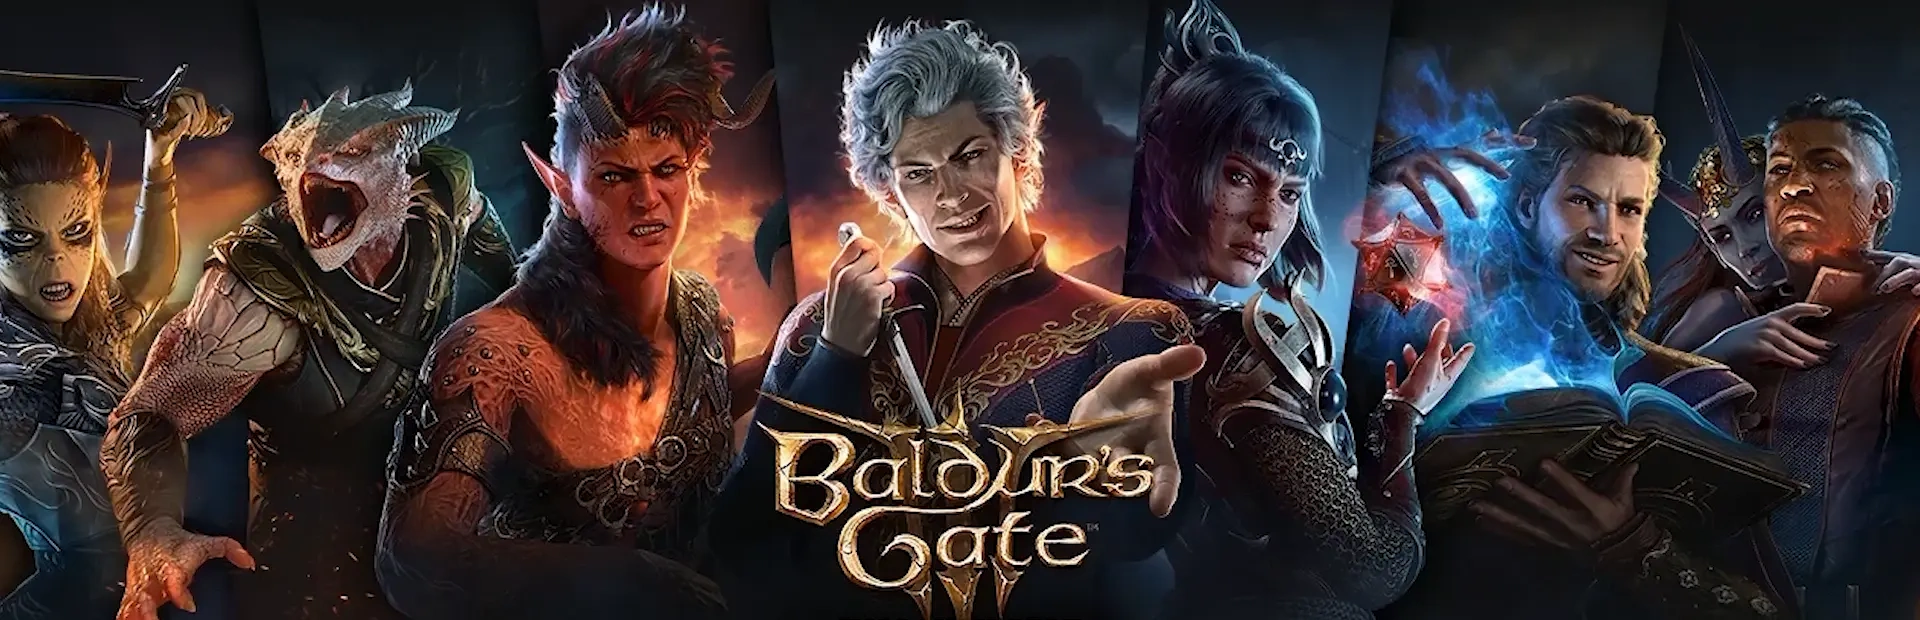 دانلود بازی Baldur's Gate 3 برای کامپیوتر | گیمباتو